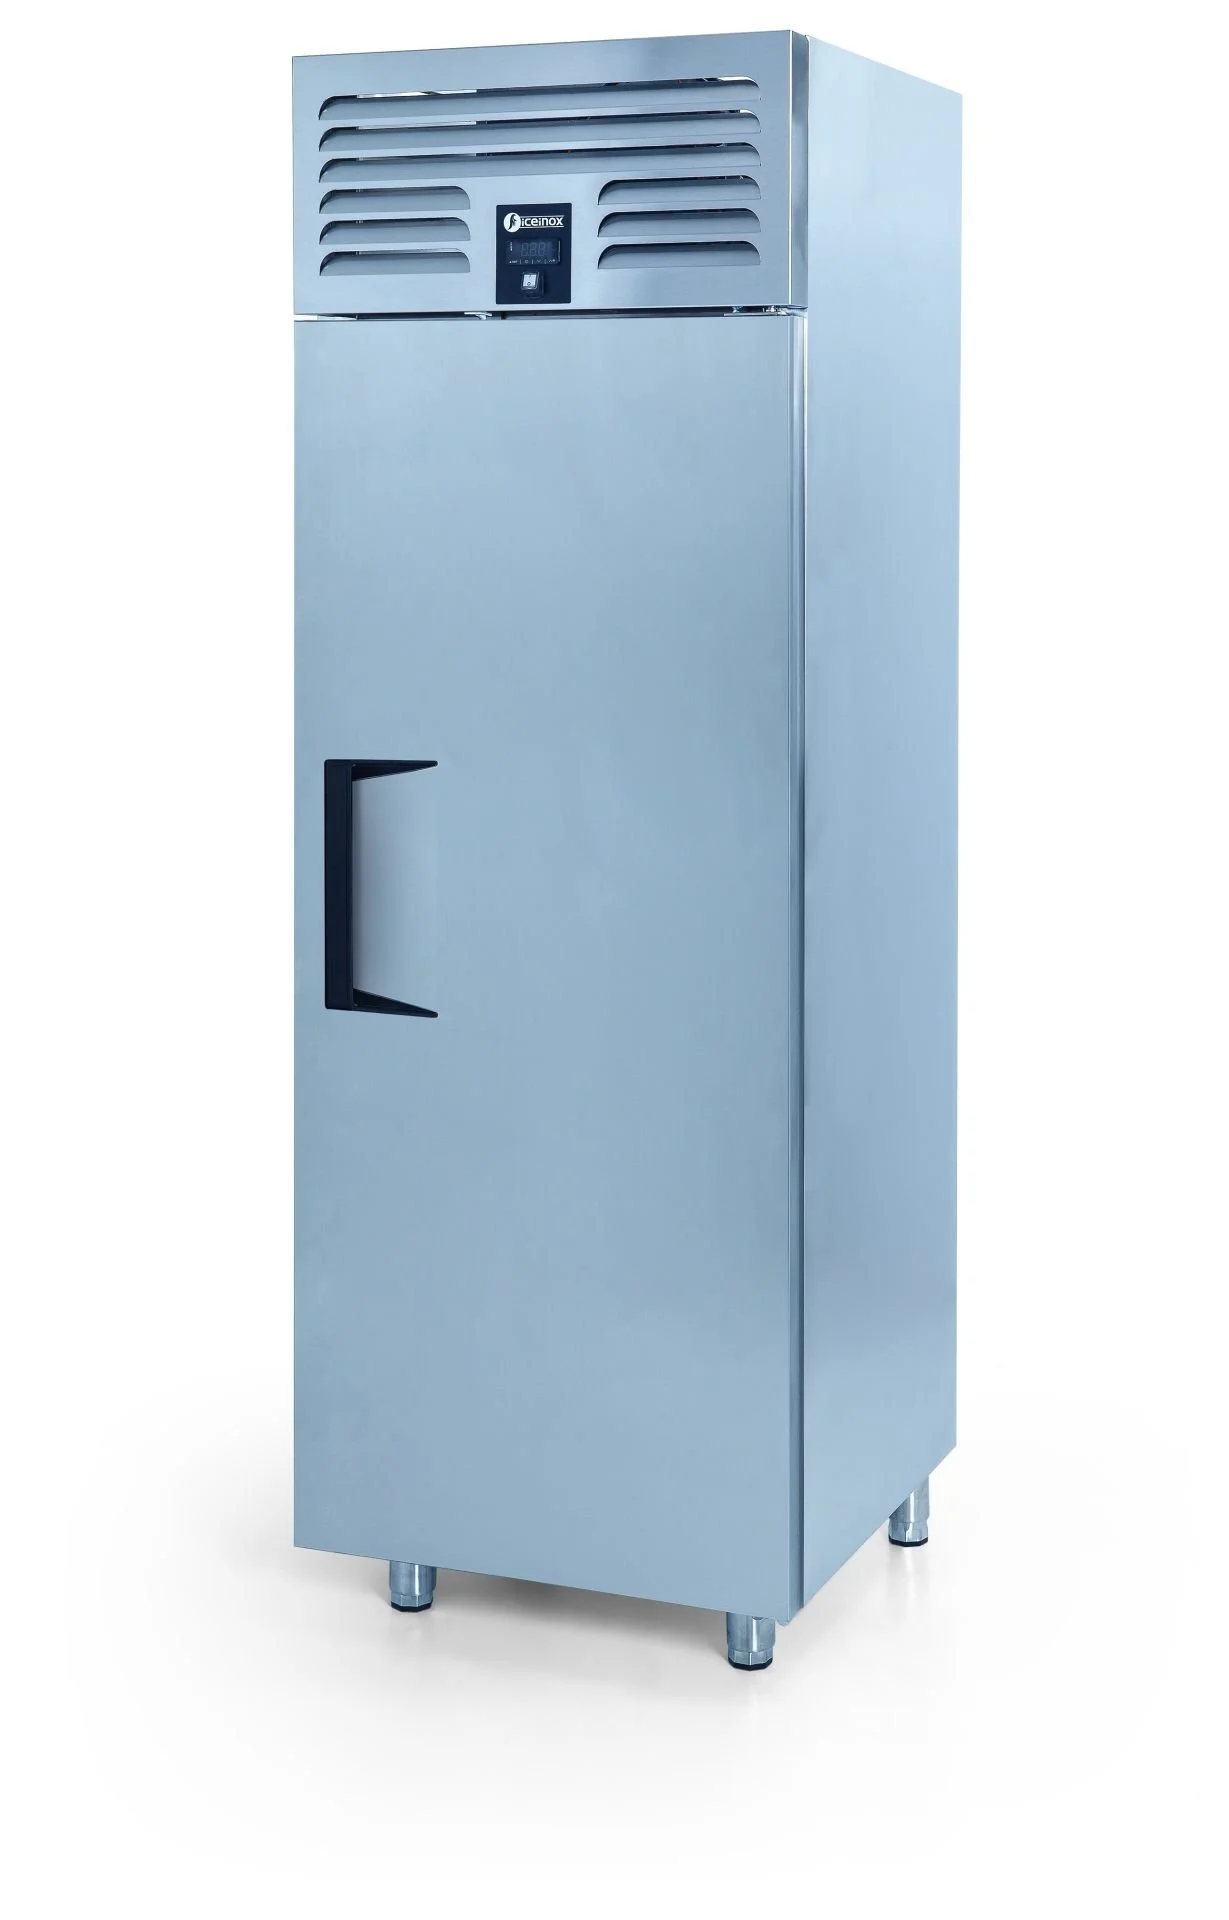 ICEINOX - Iceinox VTS 5200 CR Dikey Tip Snack Buzdolabı, 1 Kapılı, 520 L